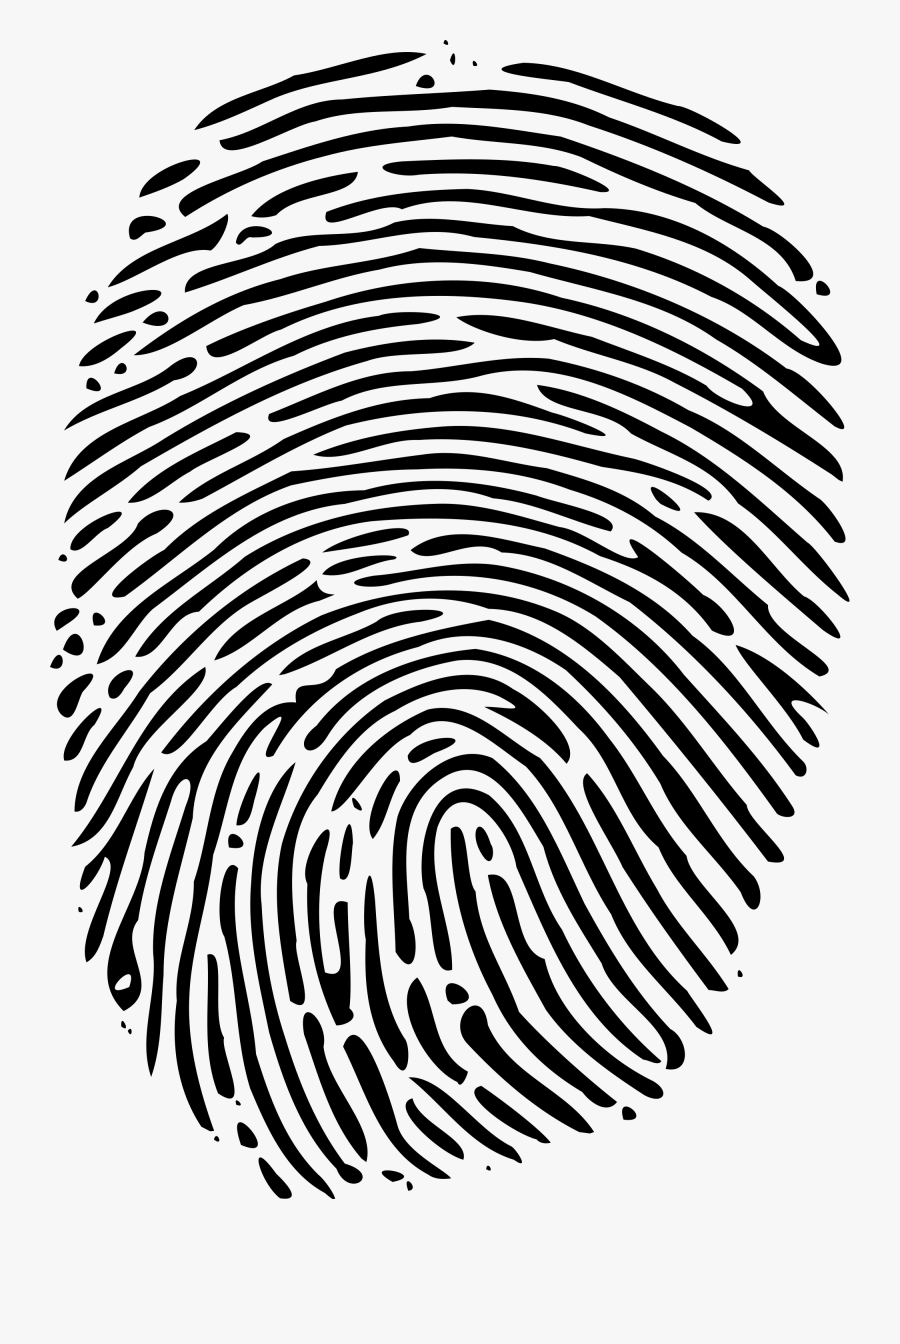 Fingerprint Png - Fingerprint Svg, Transparent Clipart